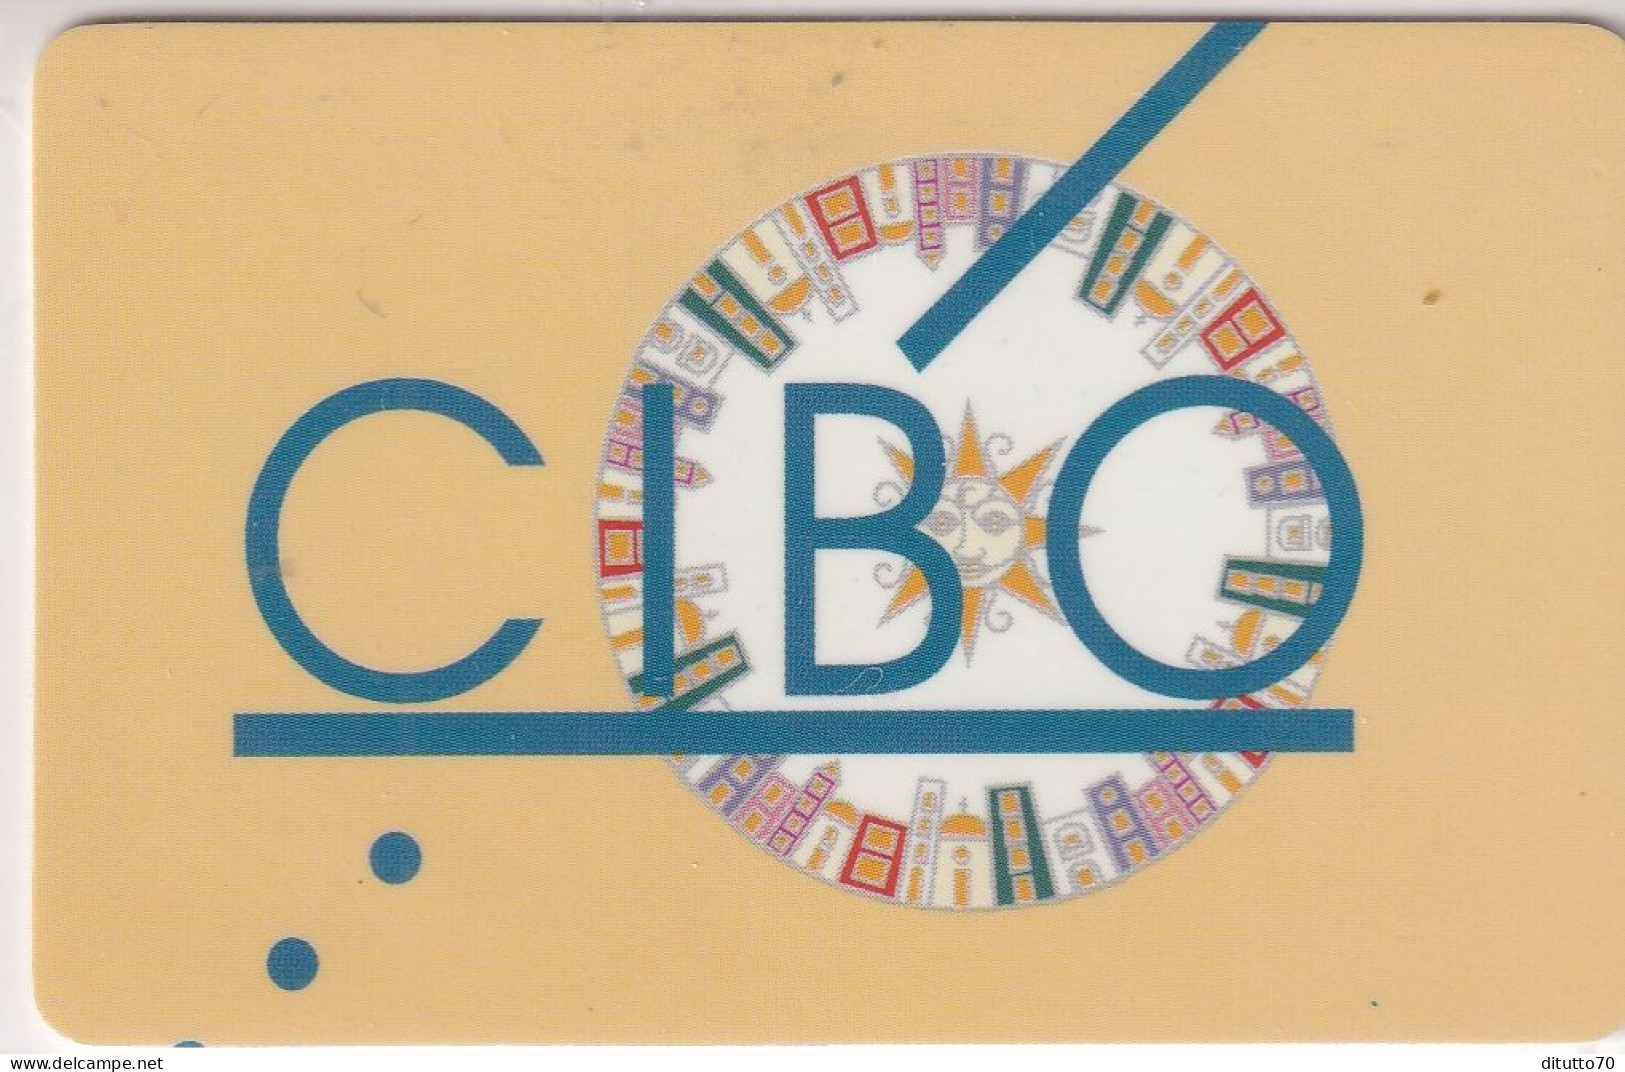 Calendarietto - Cibo - Napoli - Anno 1998 - Small : 1991-00